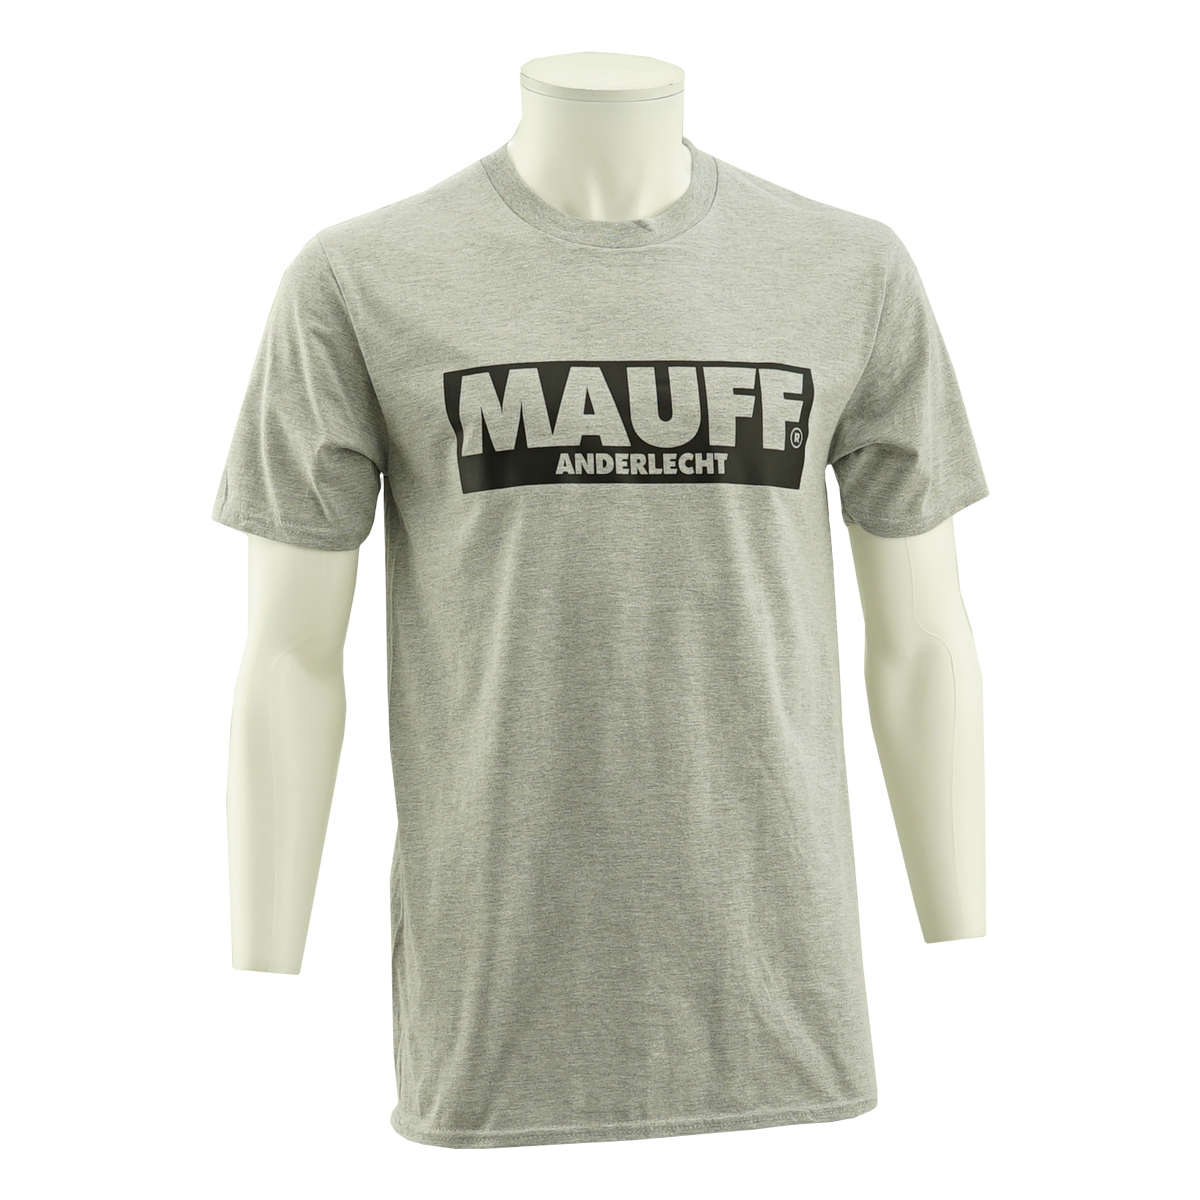 RSCA T-shirt Mauff Anderlecht